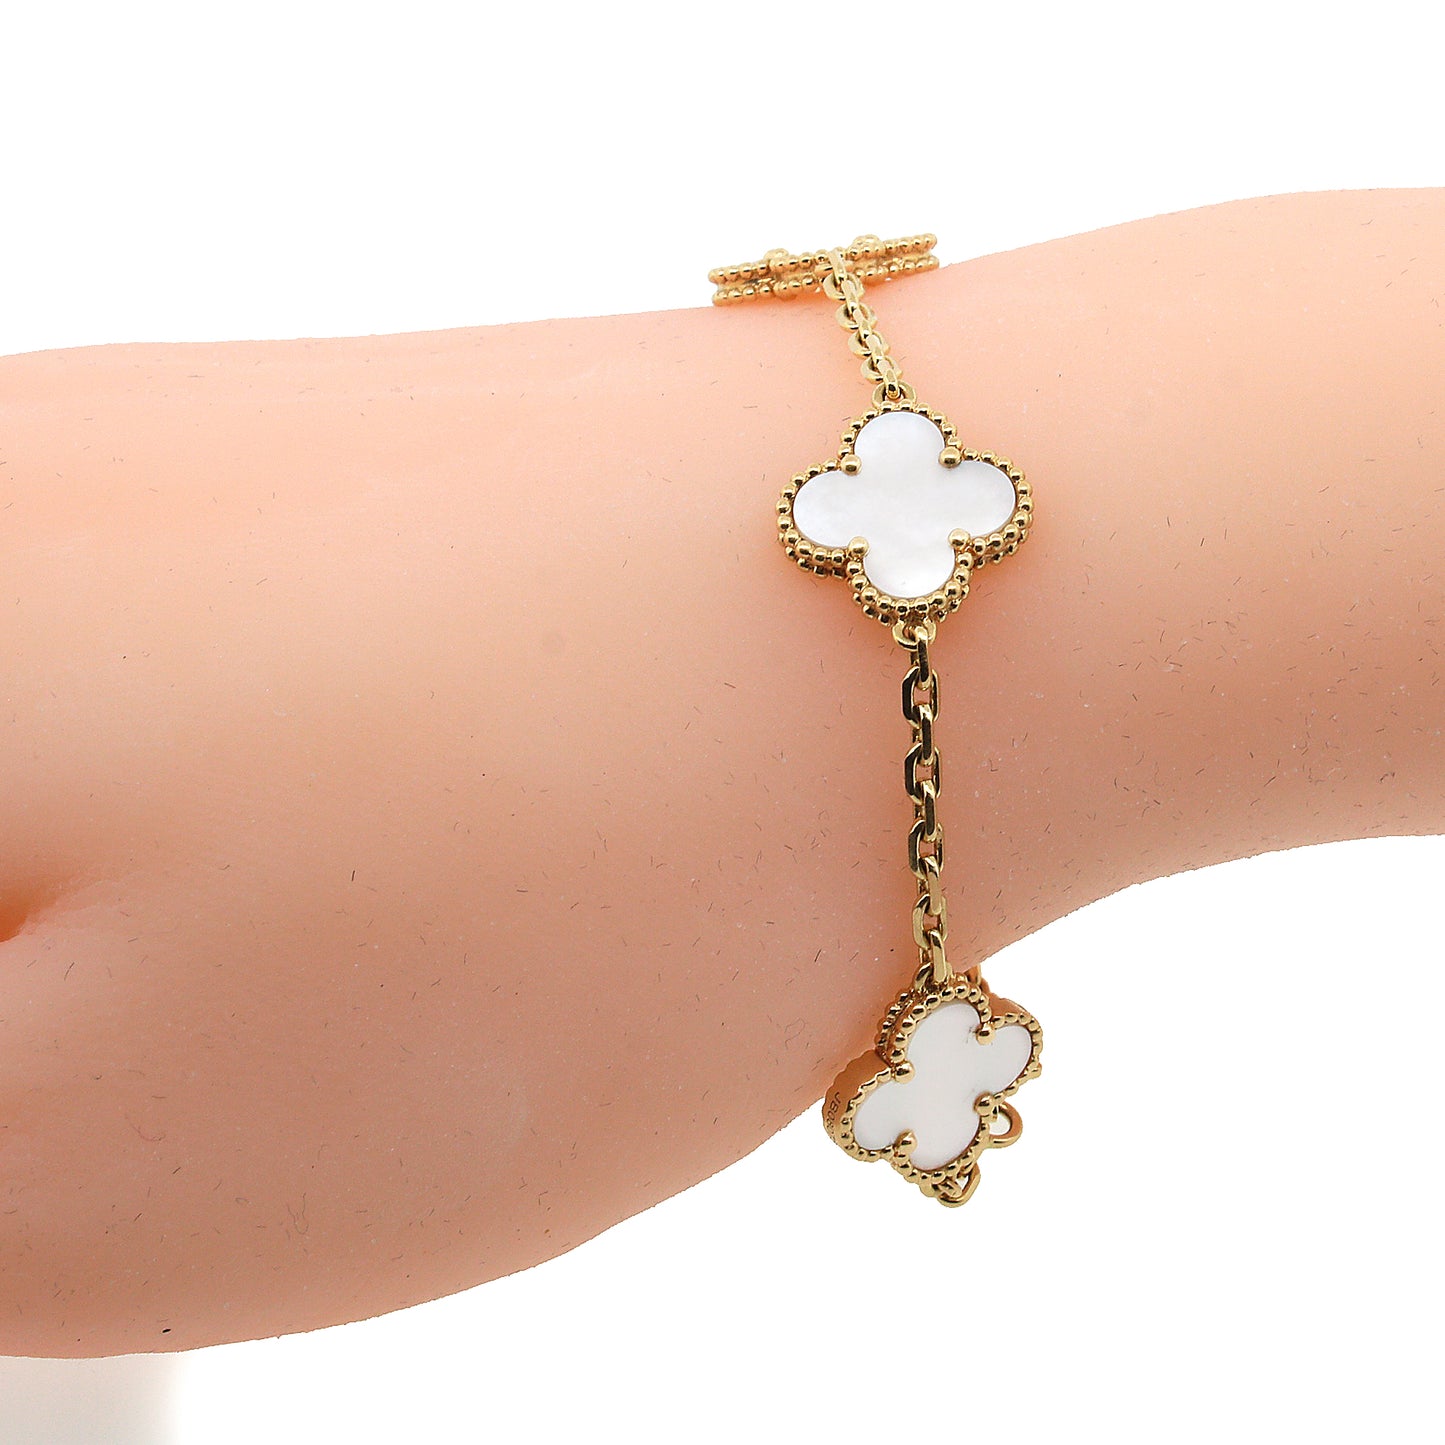 Van Cleef & Arpels Sweet Alhambra bracelet, 1 motif